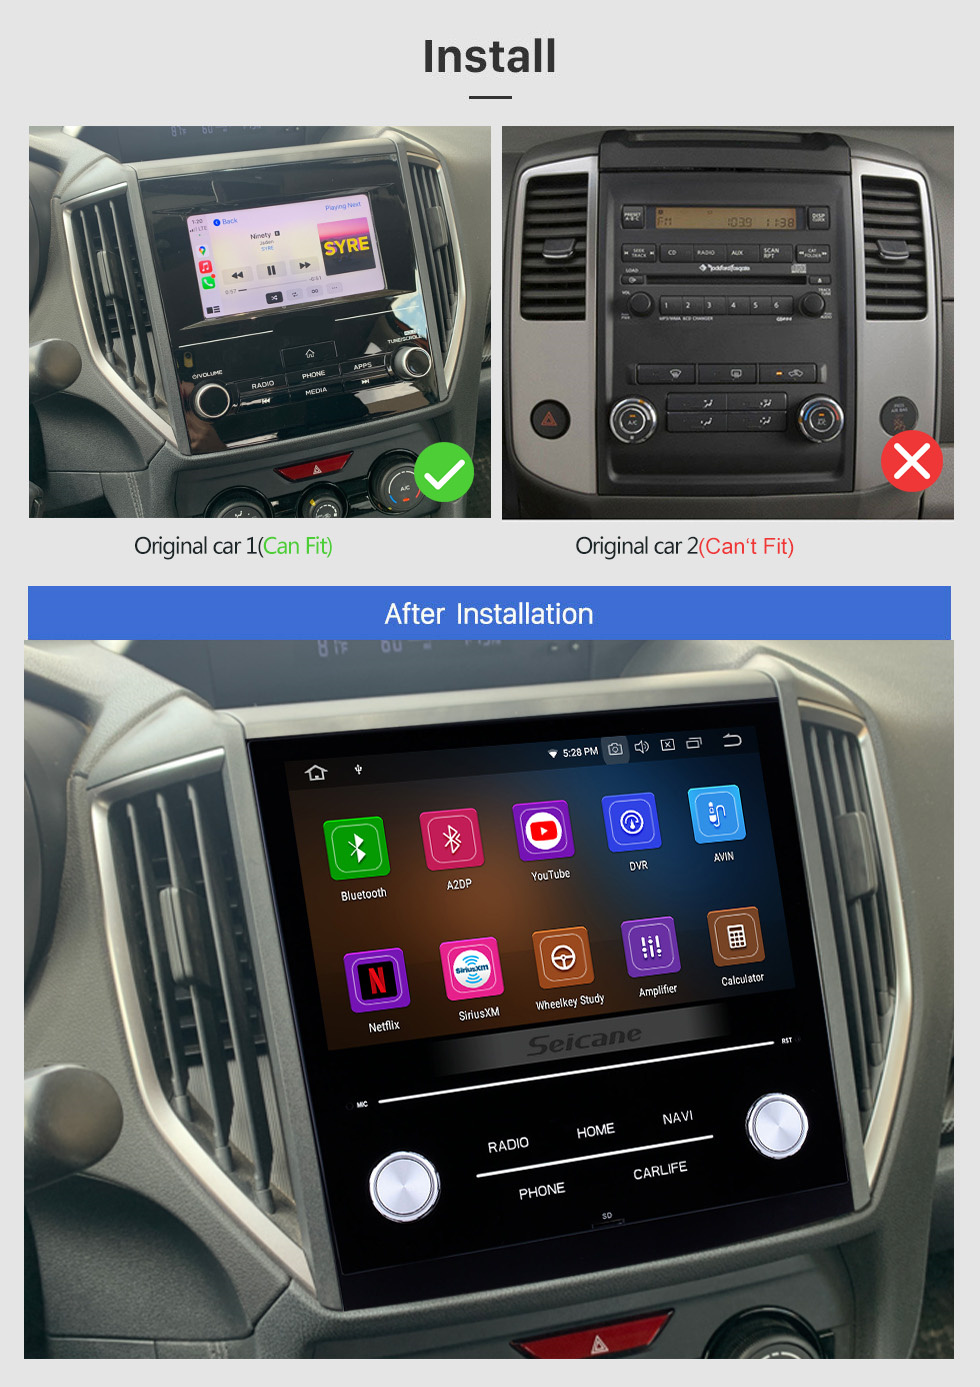 Seicane 8 pulgadas Android 12.0 HD Pantalla táctil Coche Estéreo Radio Unidad principal para 2018 Subaru XV Bluetooth Reproductor de DVD DVR Cámara de visión trasera TV Video WIFI Control del volante USB Mirror link OBD2